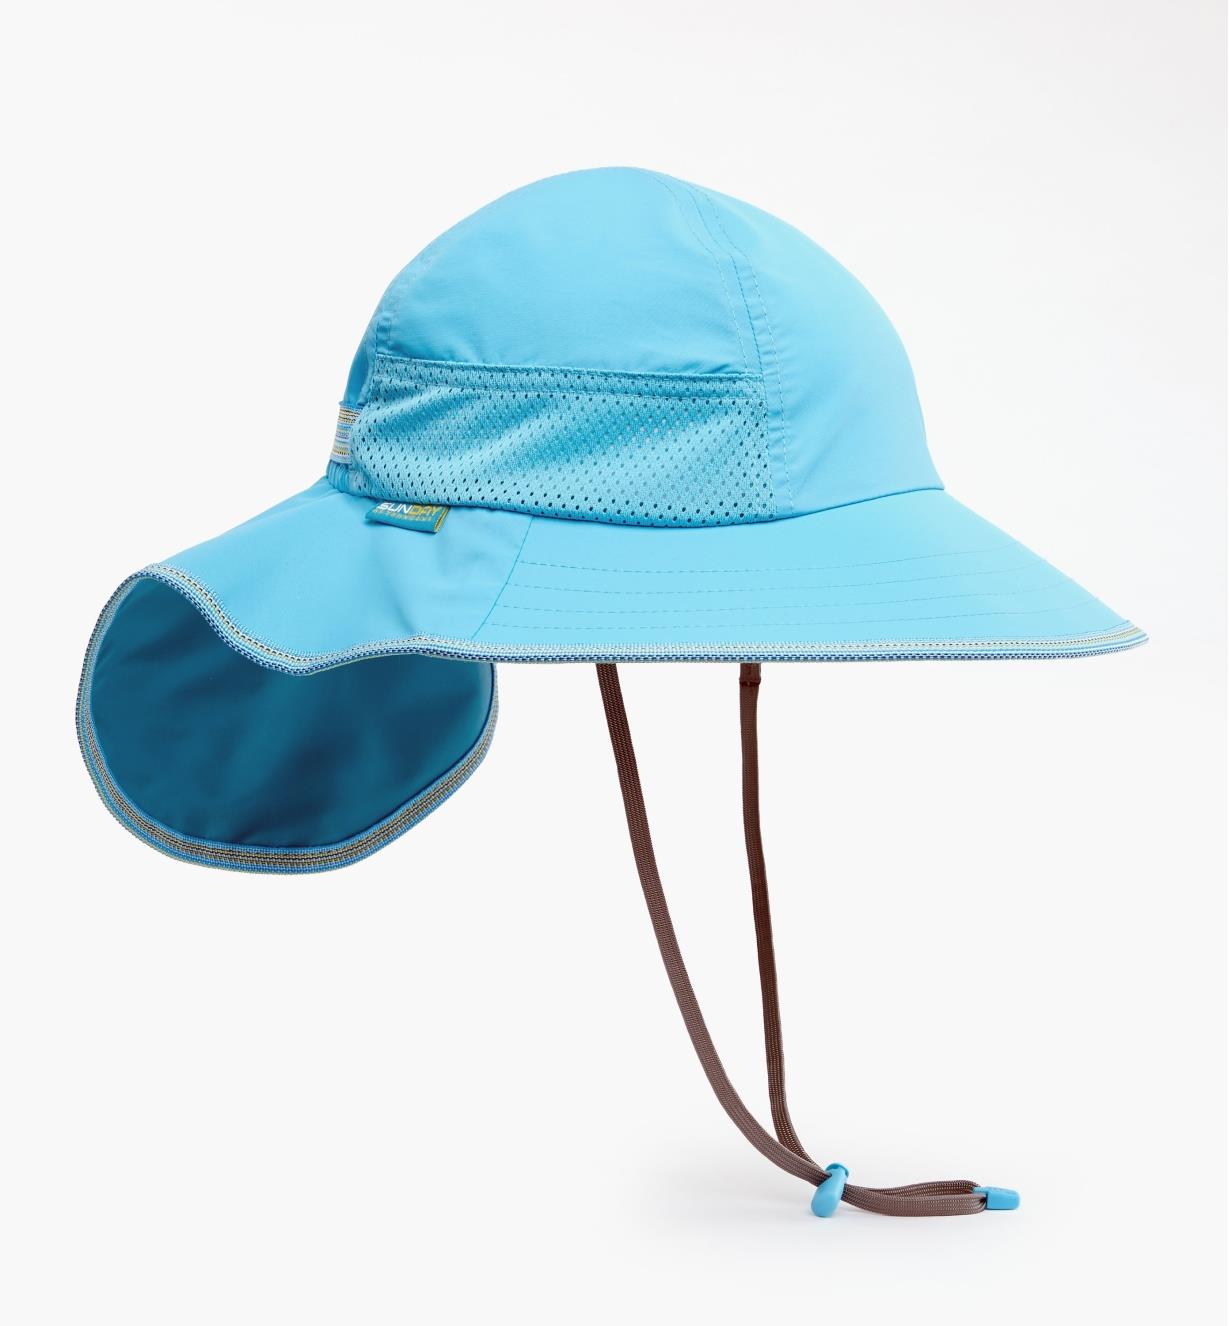 HL561 - Chapeau pour enfant, bleu